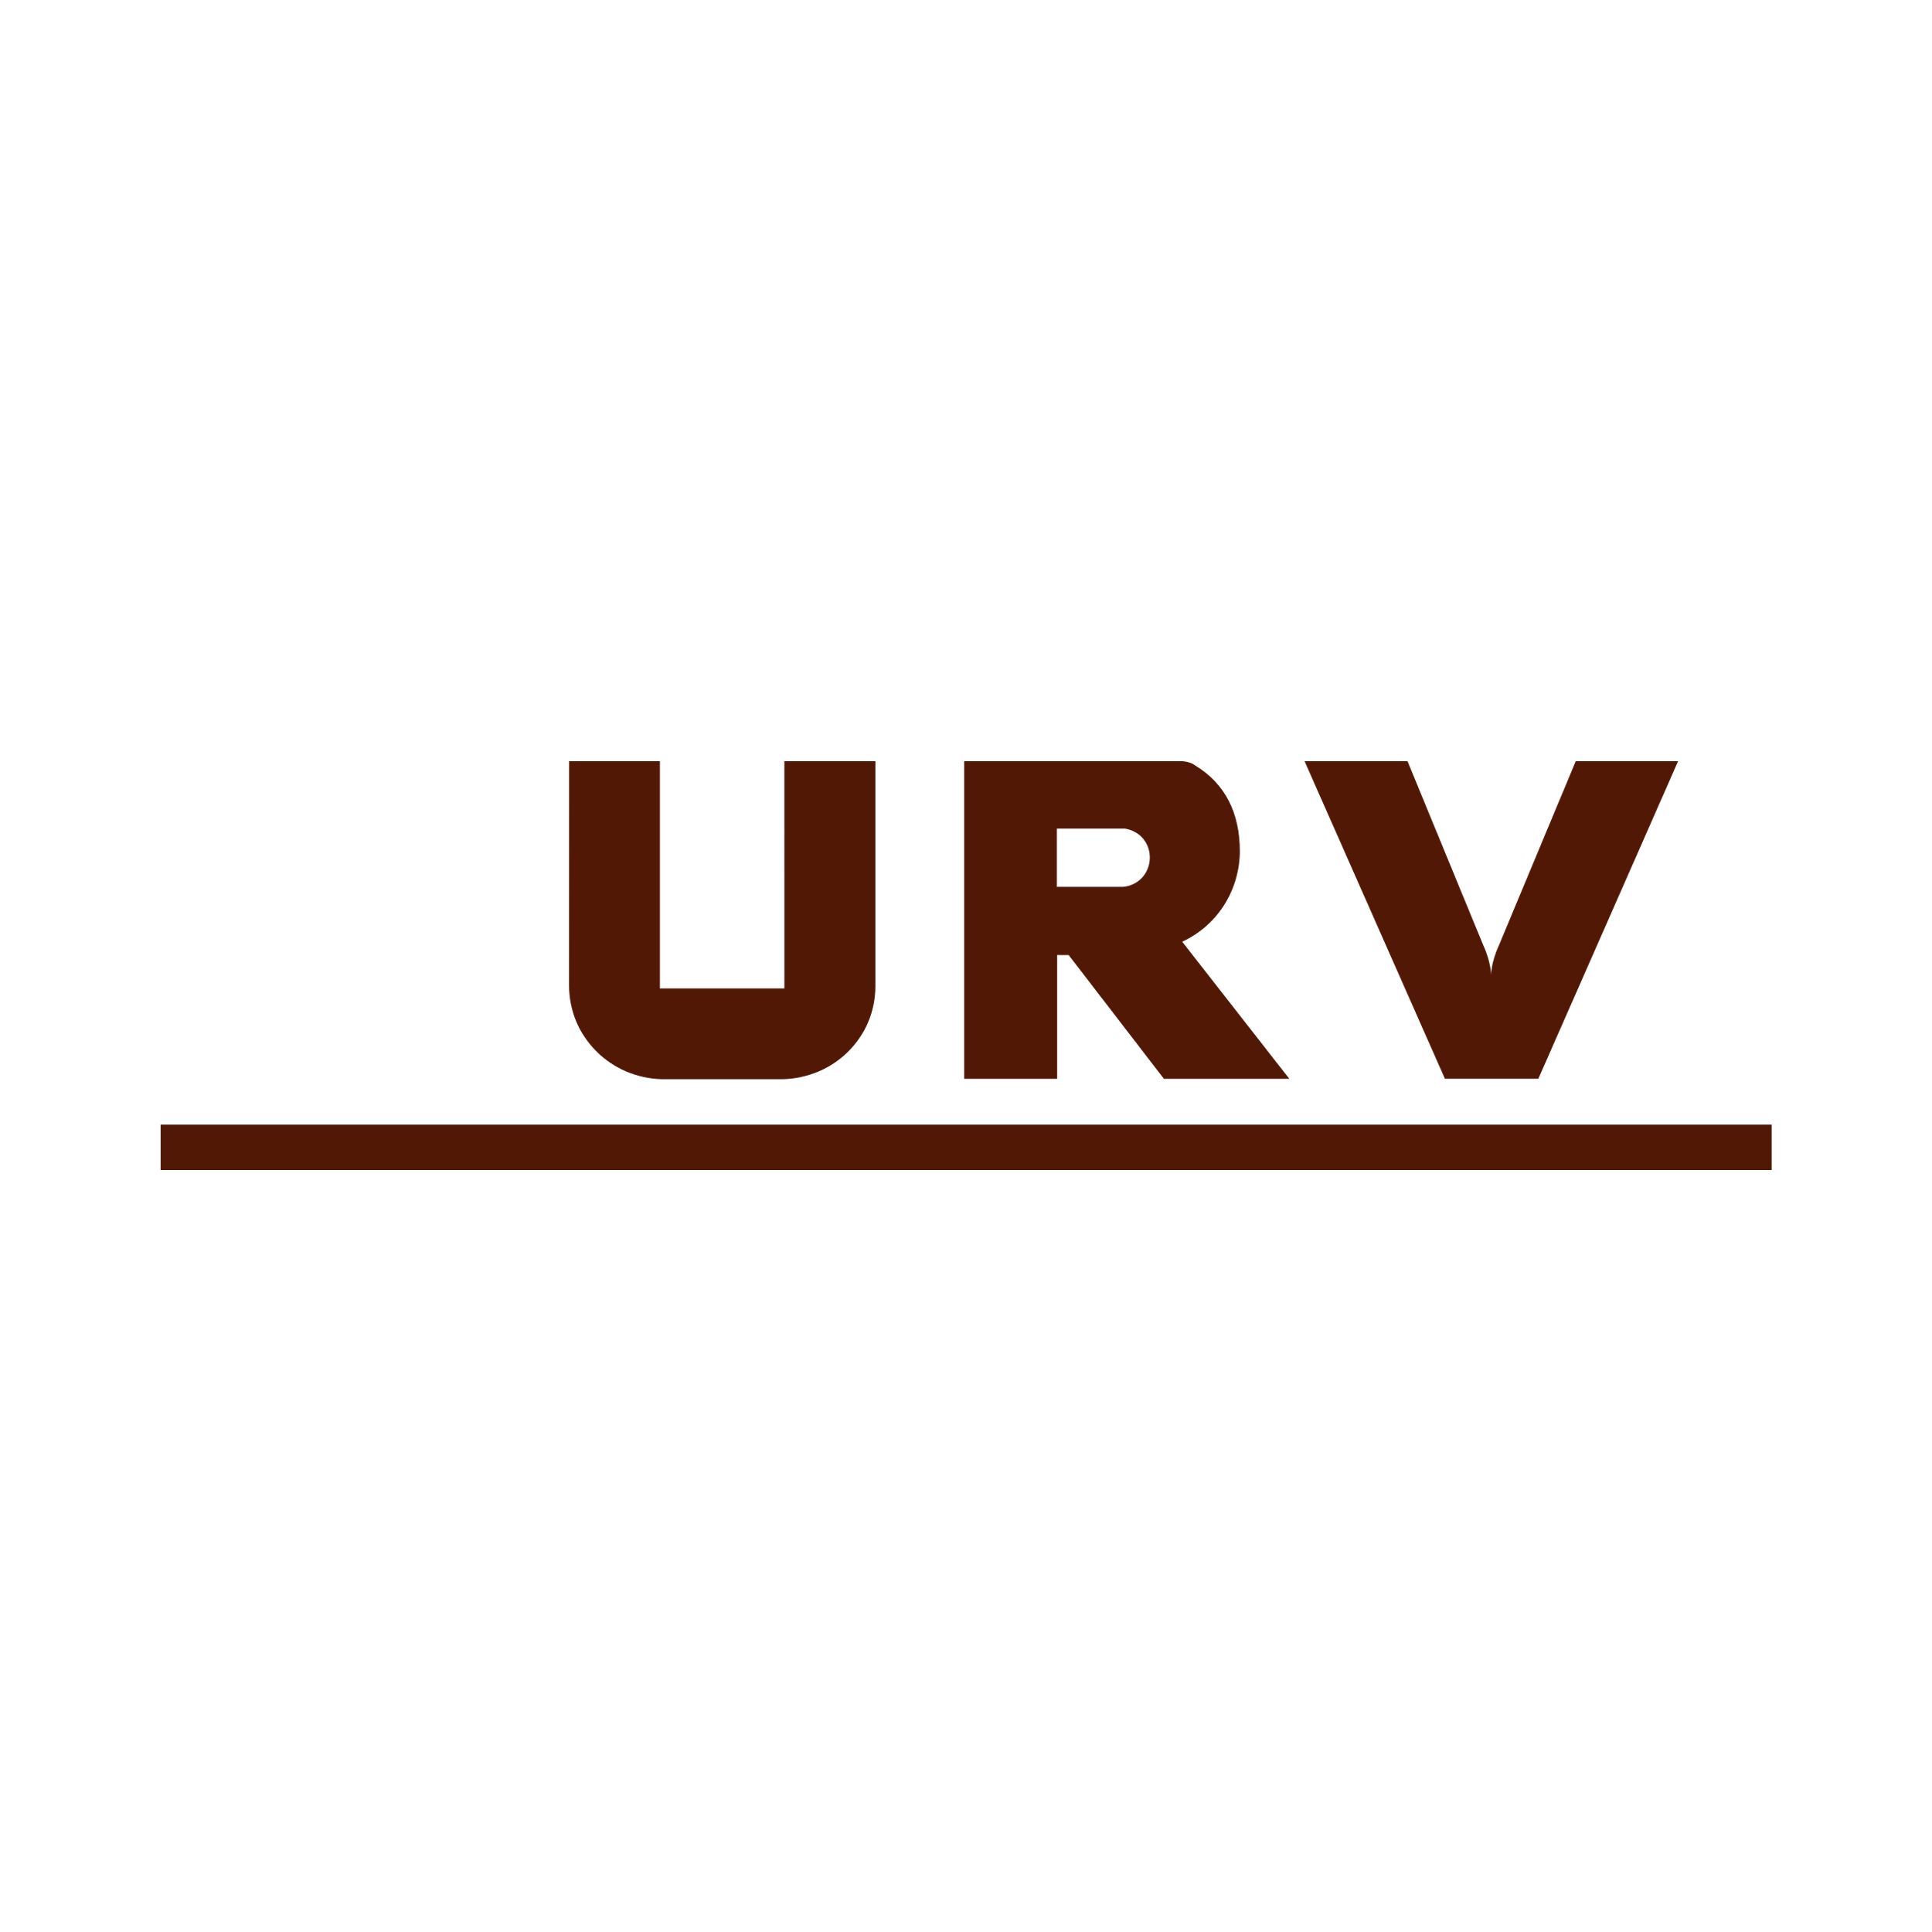 Union Reiseversicherung Logo  Transparent Gallery